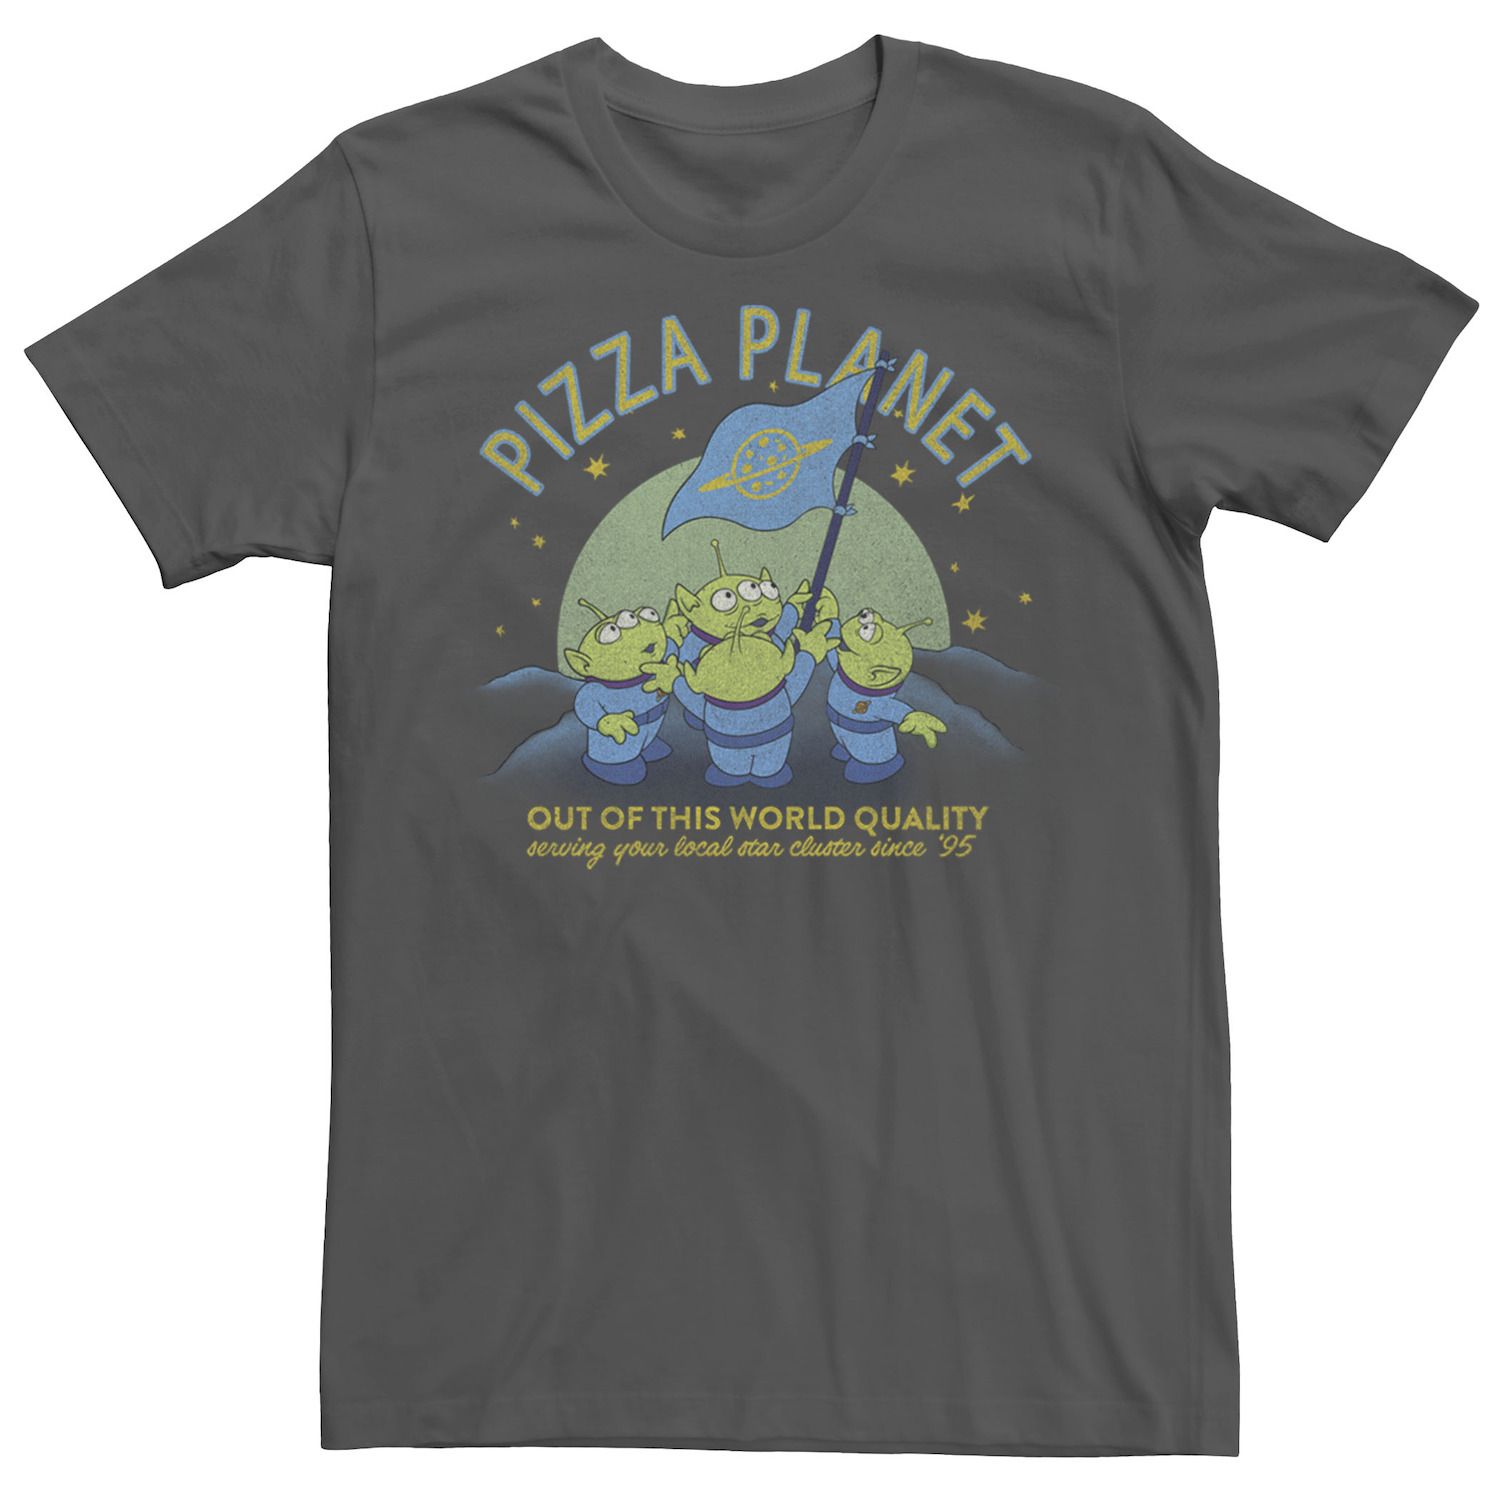 Мужская футболка с флагом «История игрушек Пицца Планета игрушек» Disney / Pixar женская футболка планета пицца m красный